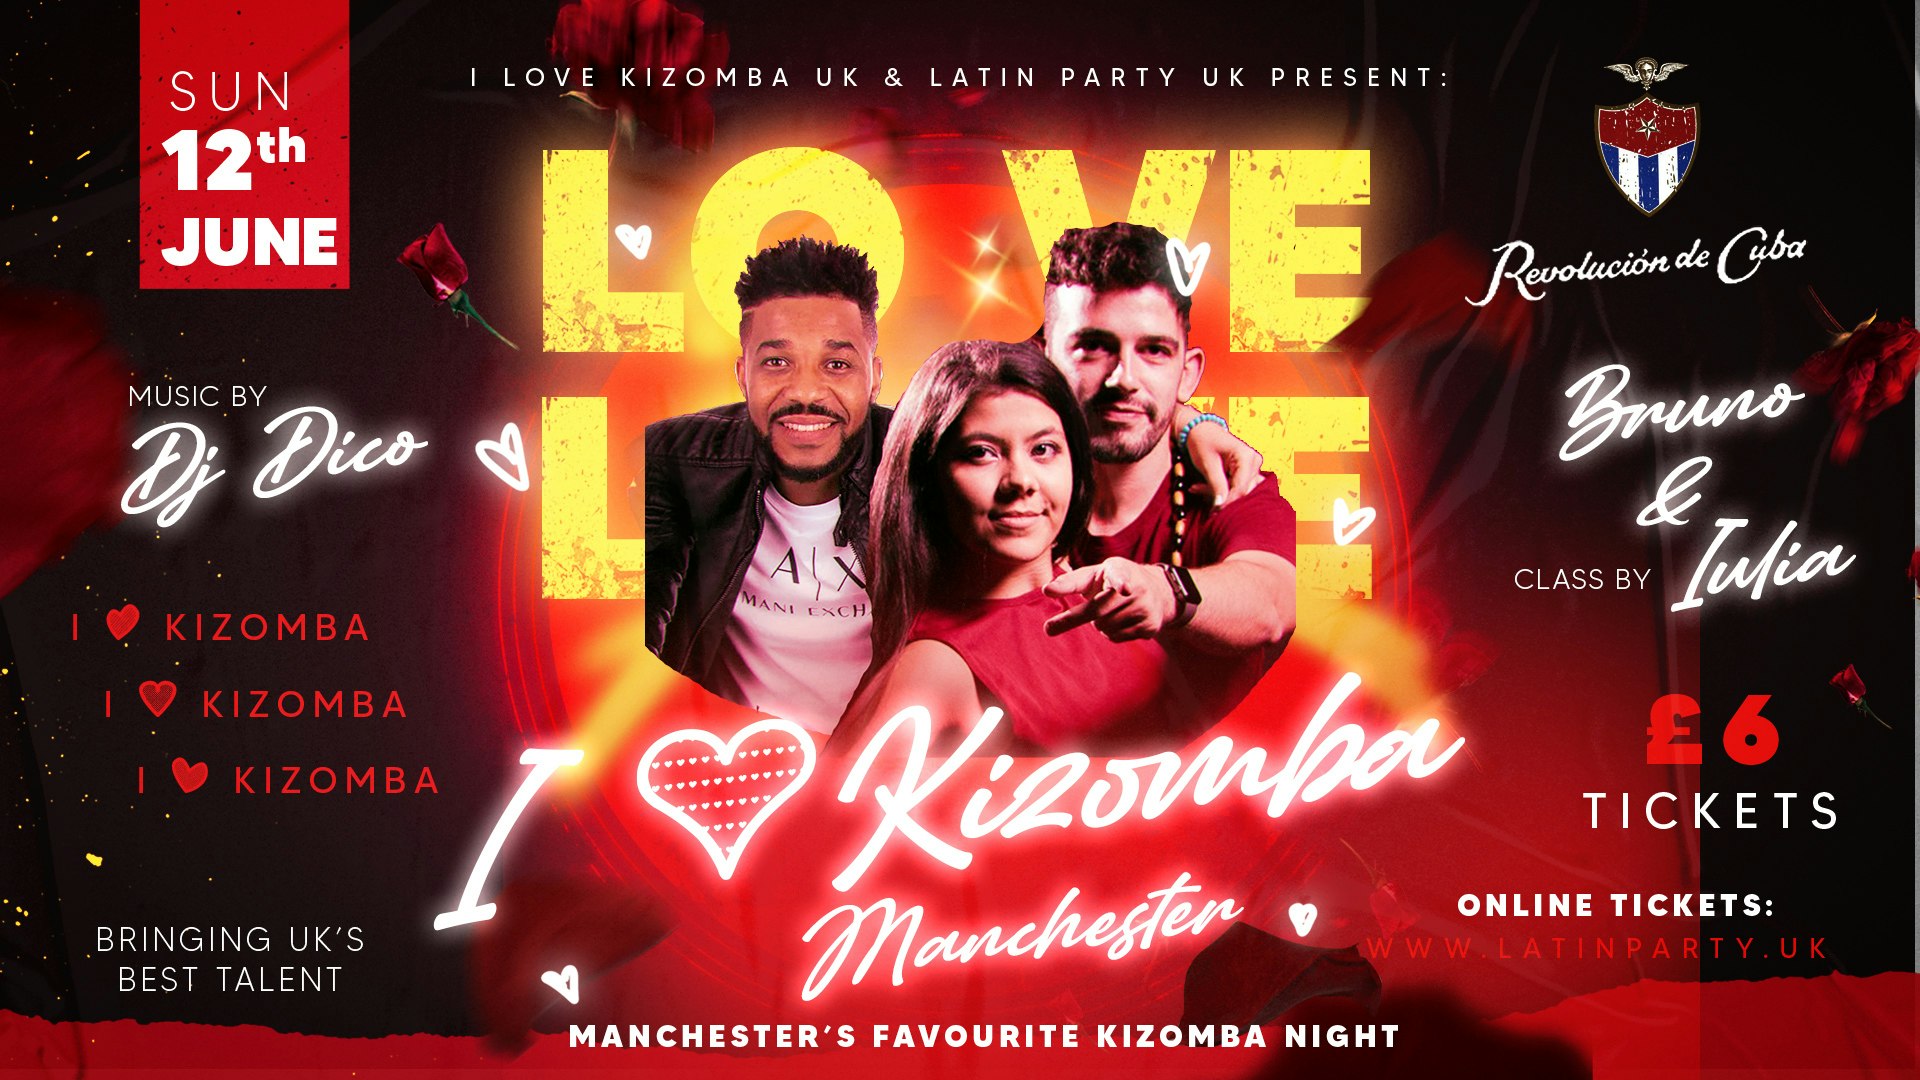 I Love Kizomba Manchester – Sunday 12th June | Revolucion de Cuba Manchester